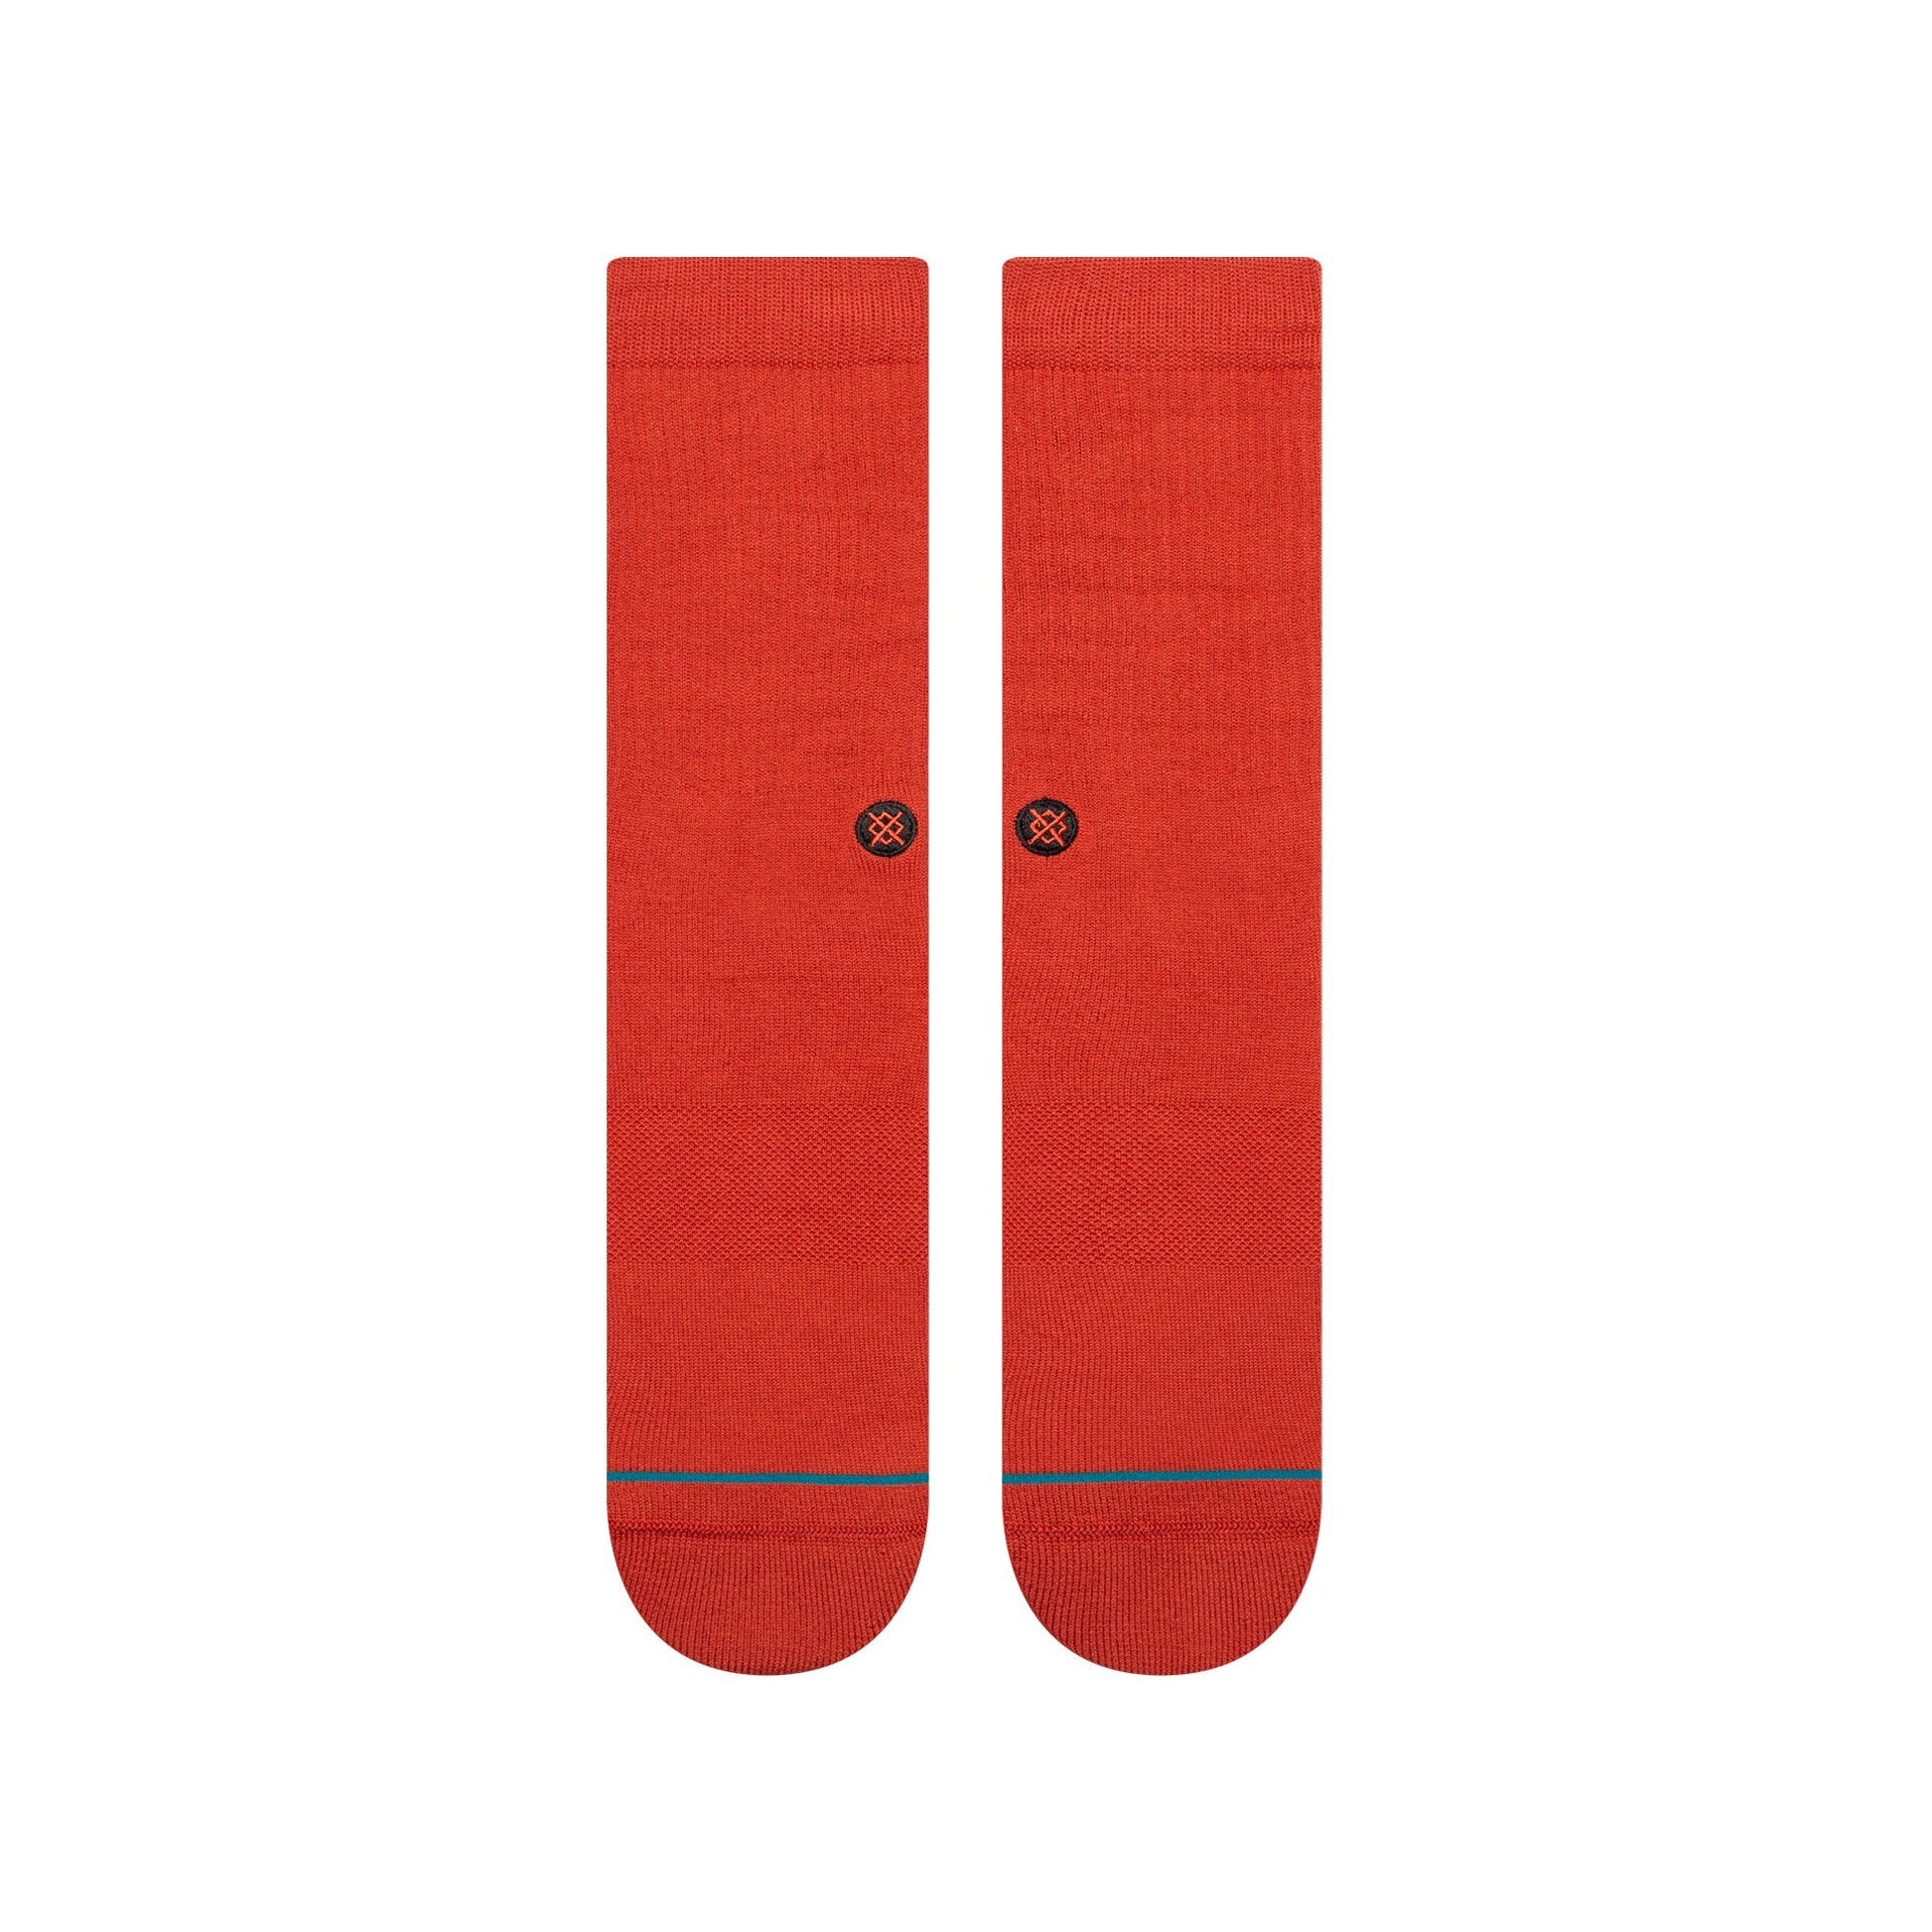 Chaussettes mi-mollet rouge foncé Icon de Stance